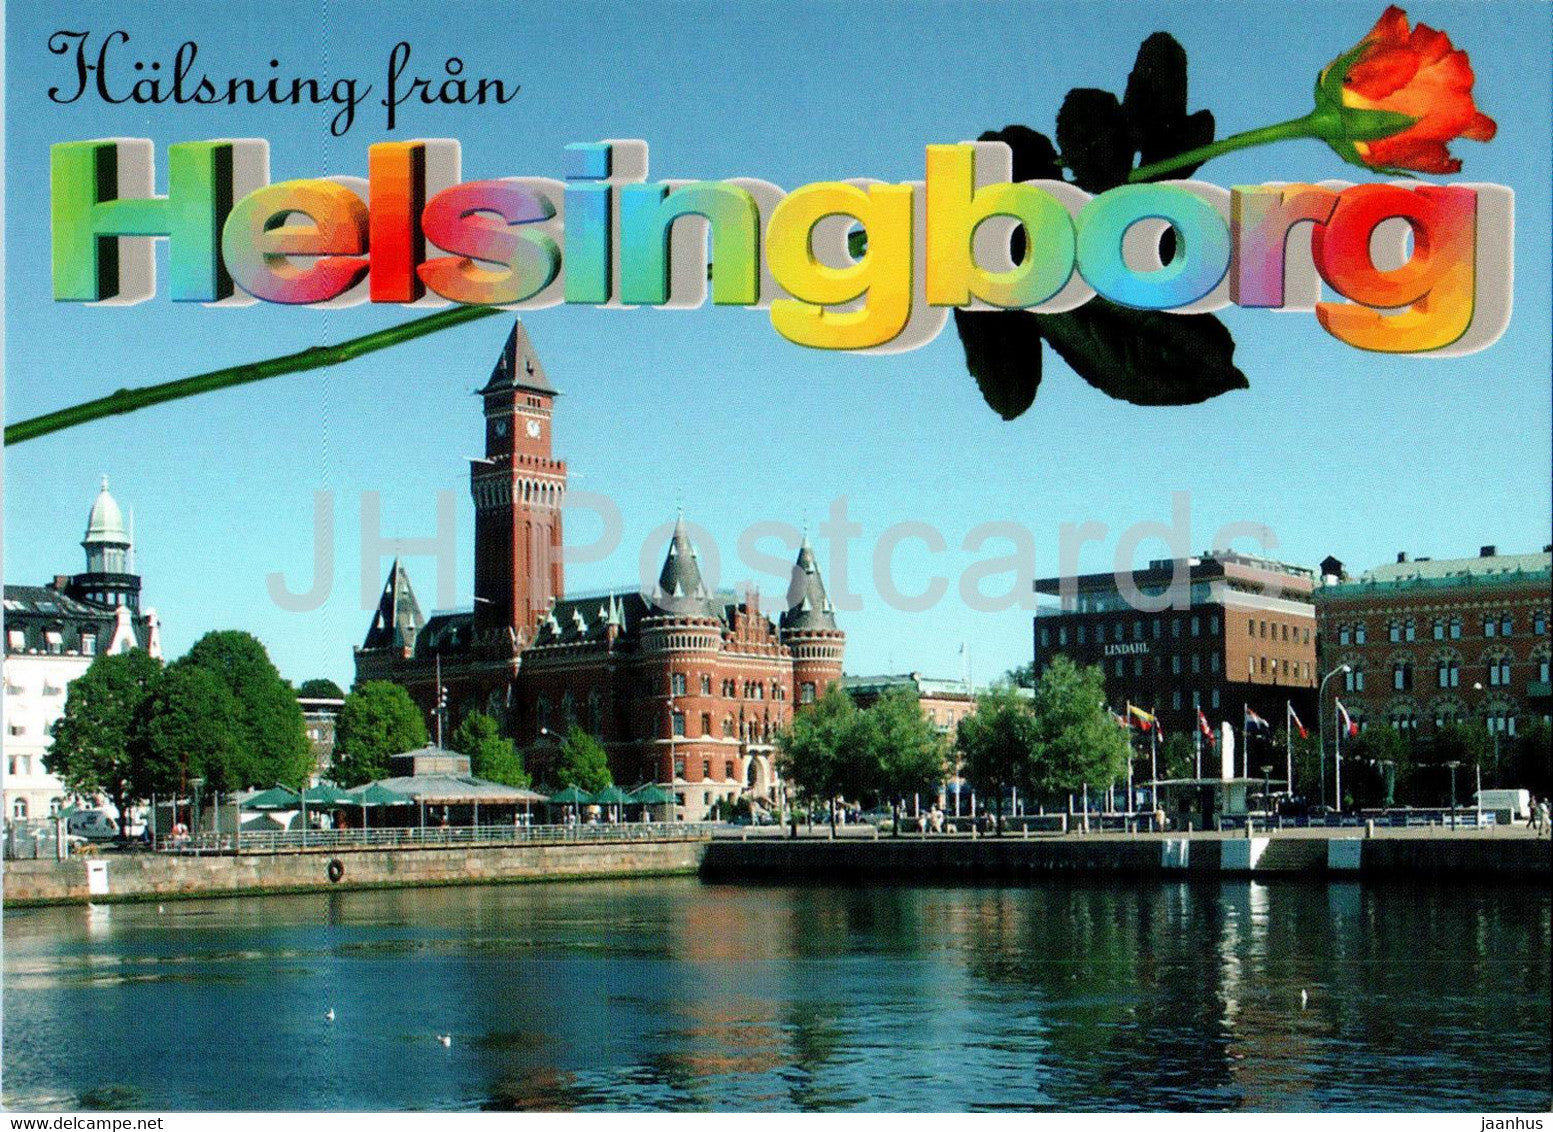 Halsning fran Helsingborg - multiview - 7478 - Sweden - unused - JH Postcards